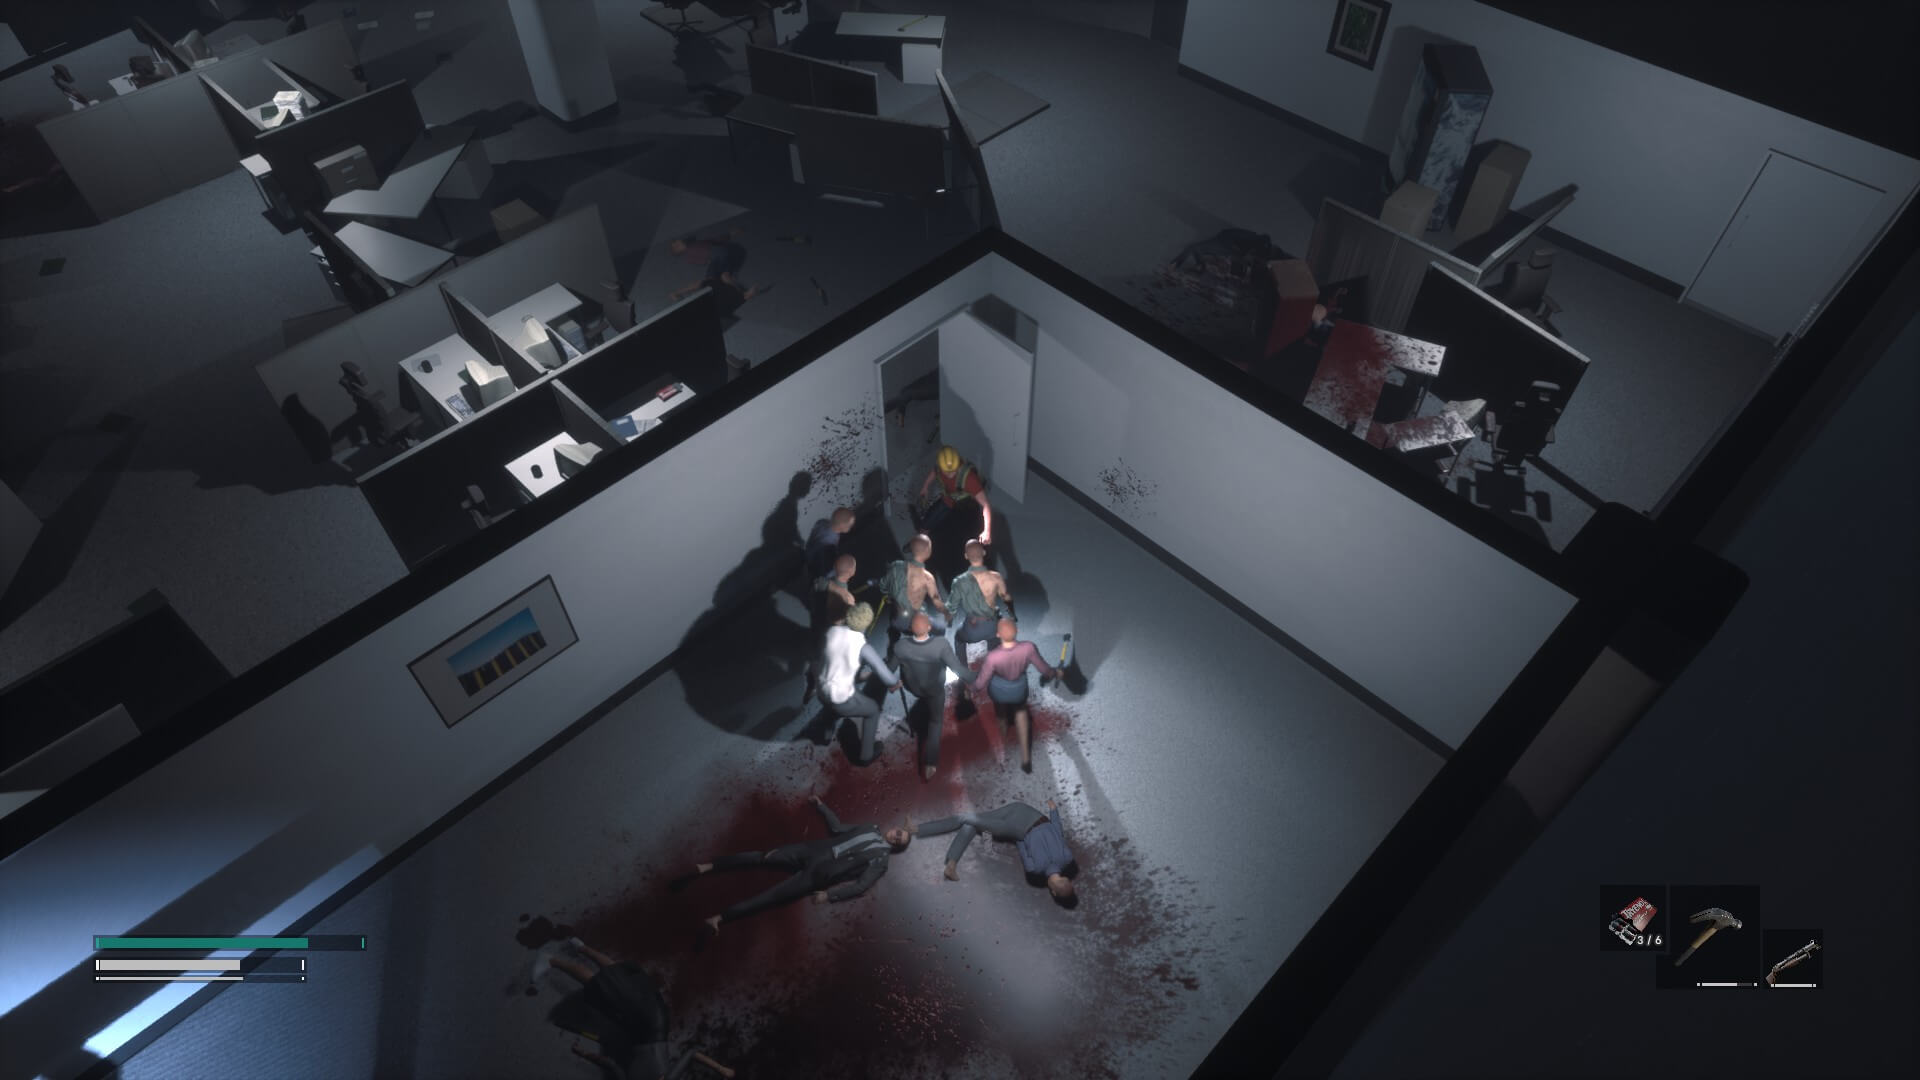 Je suis entré dans une pièce pleine d’infectés.  La zone principale est remplie de bureaux et de cabines avec des cadavres tachant le sol de sang.